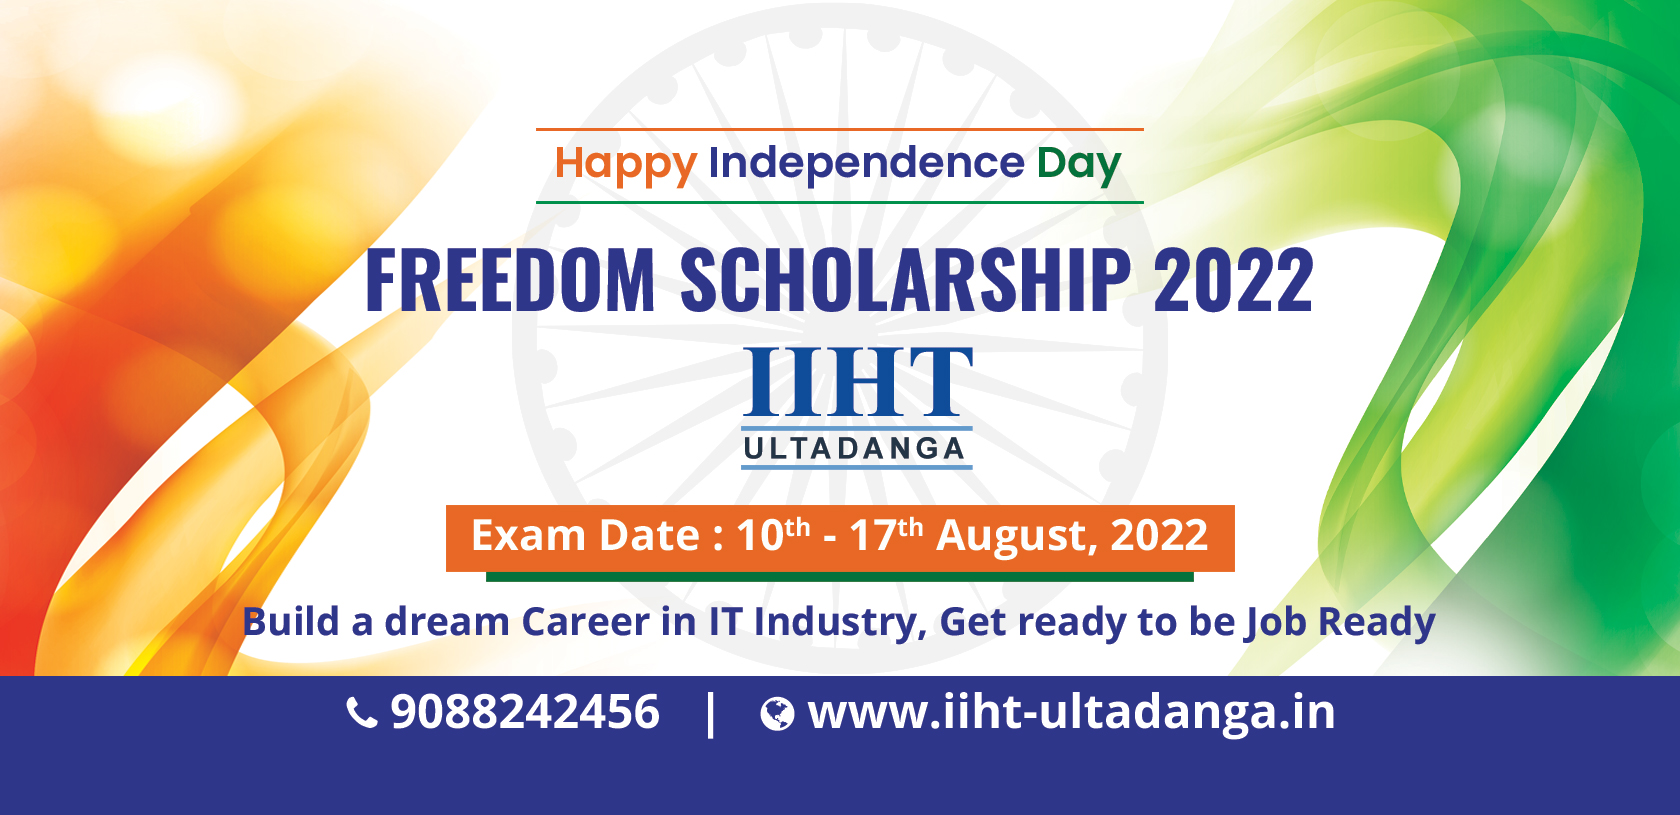 IIHT Ultadanga Freedom Scholarship 2022, IIHT Ultadanga